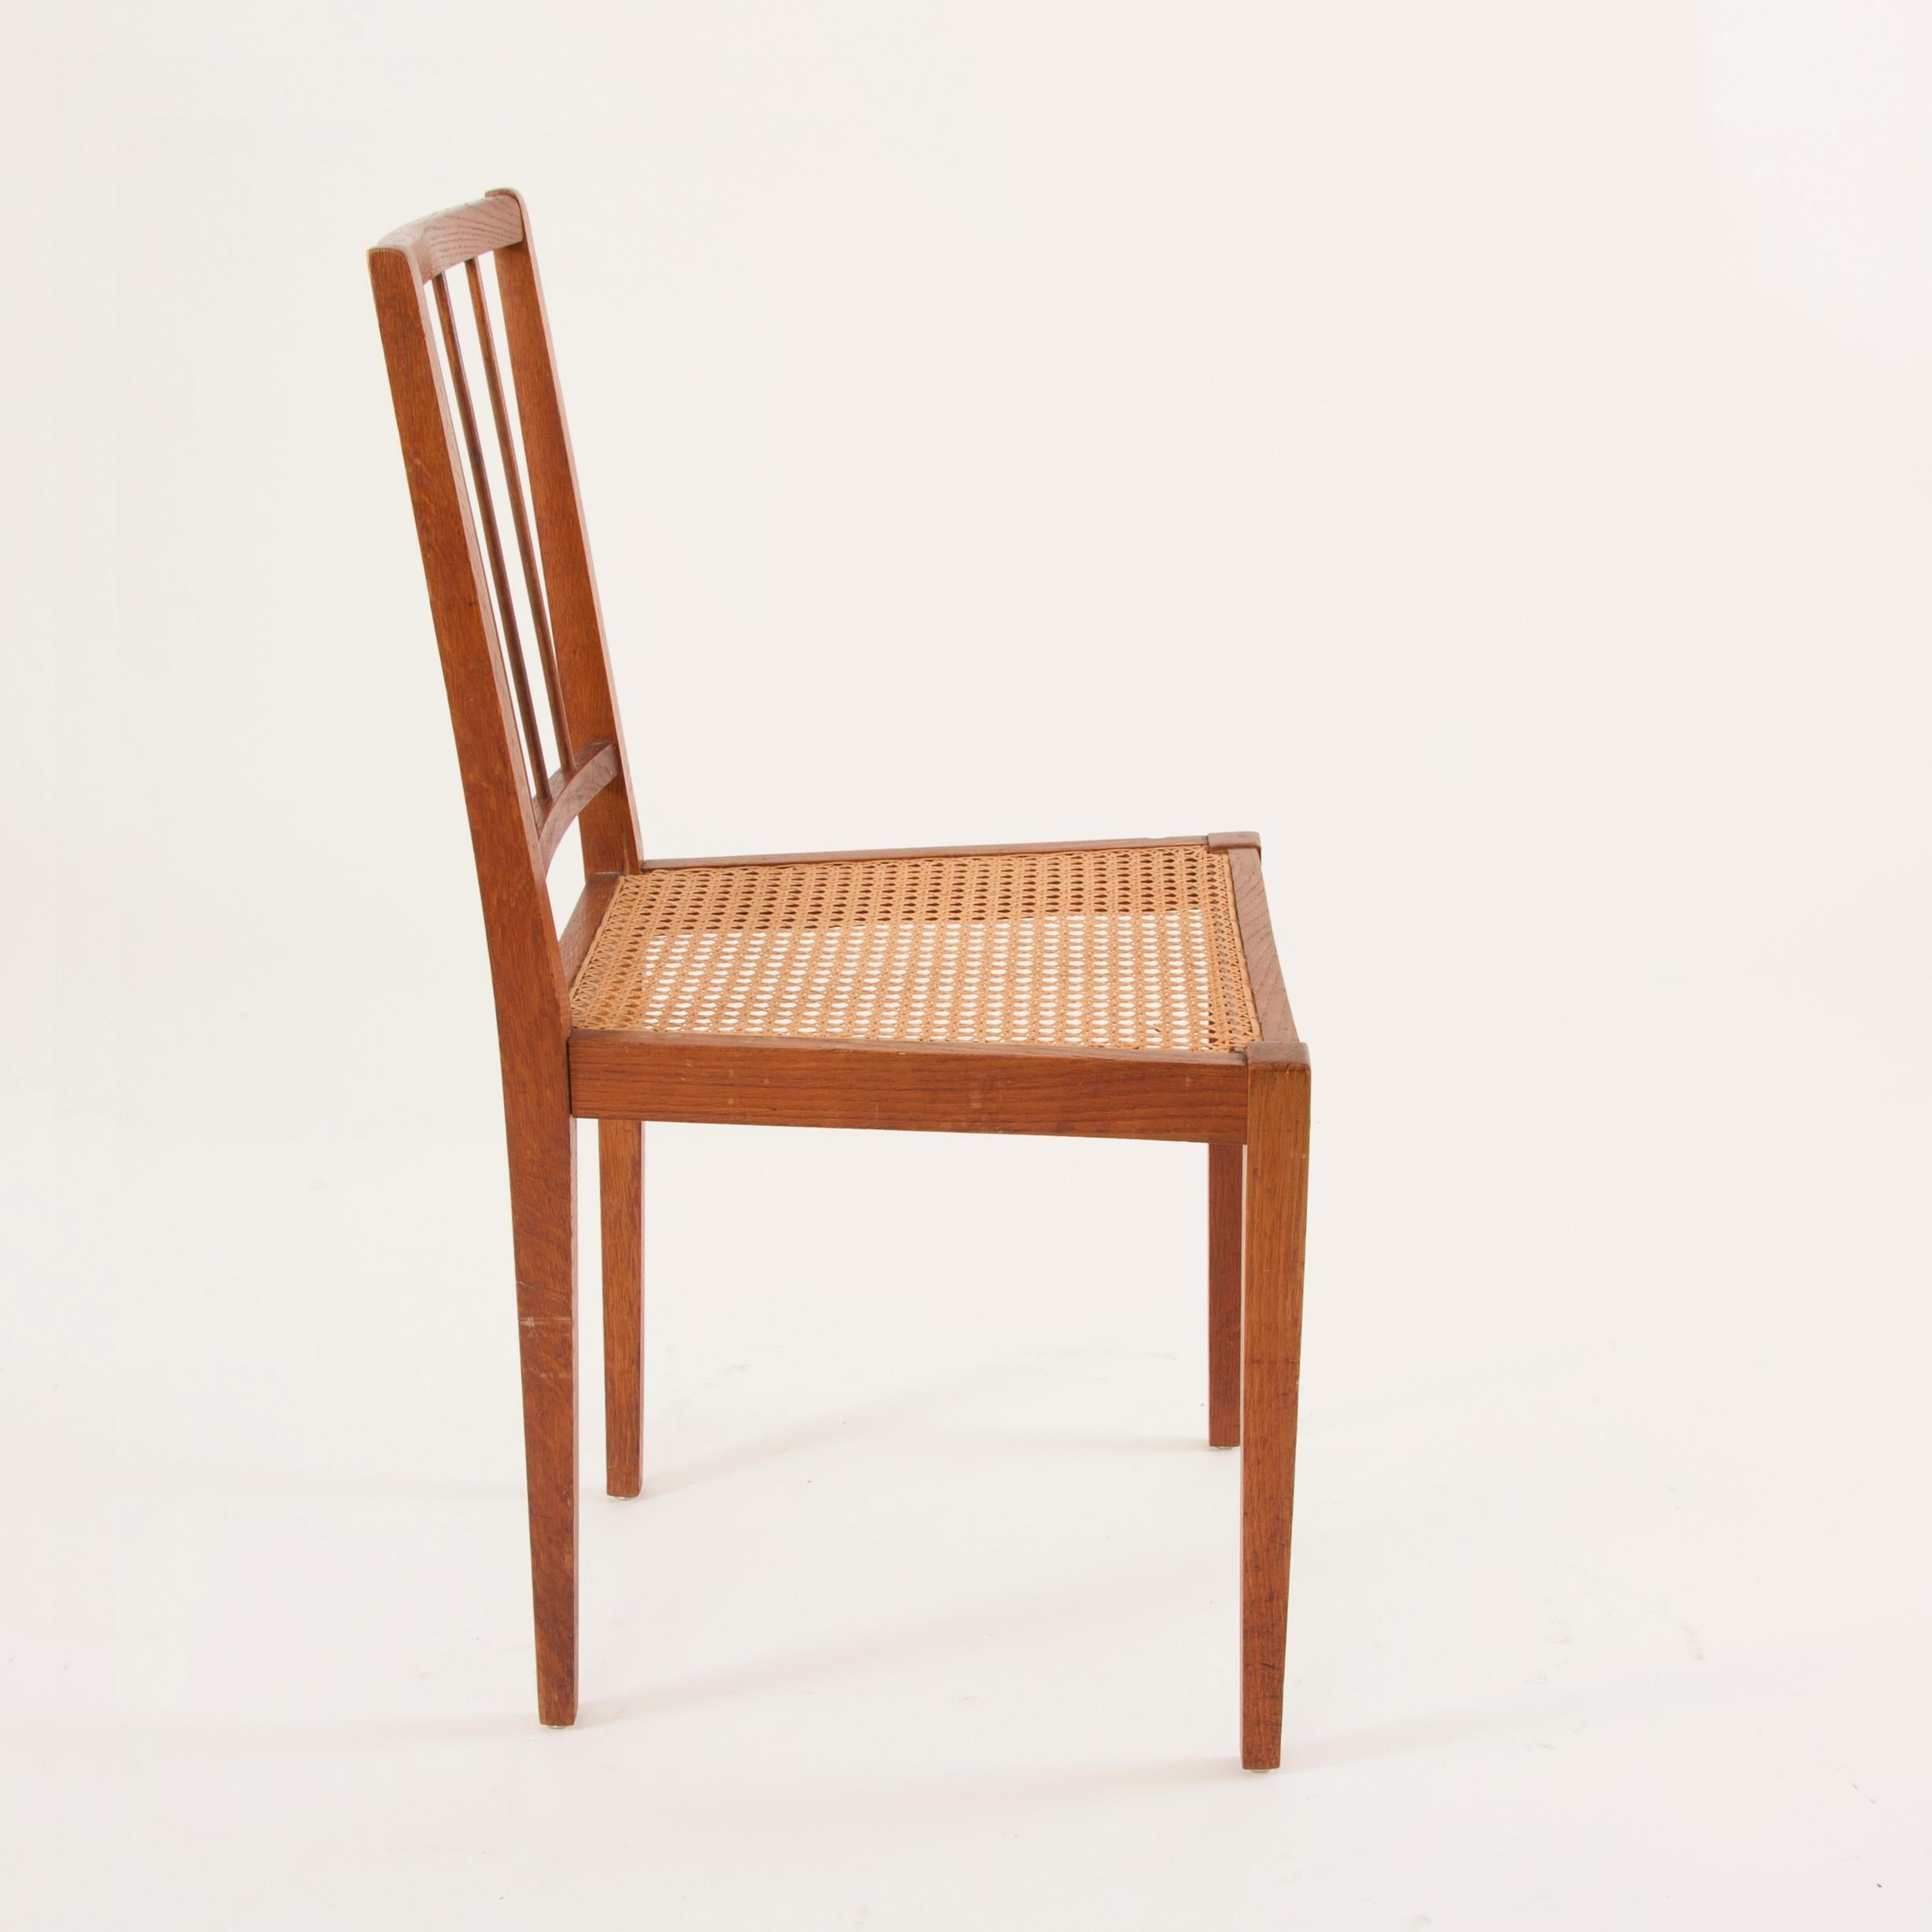 Two Elegant Werkstätte Hagenauer Chairs M006 by Julius Jirasek, Austria, 1930 In Good Condition For Sale In Vienna, AT